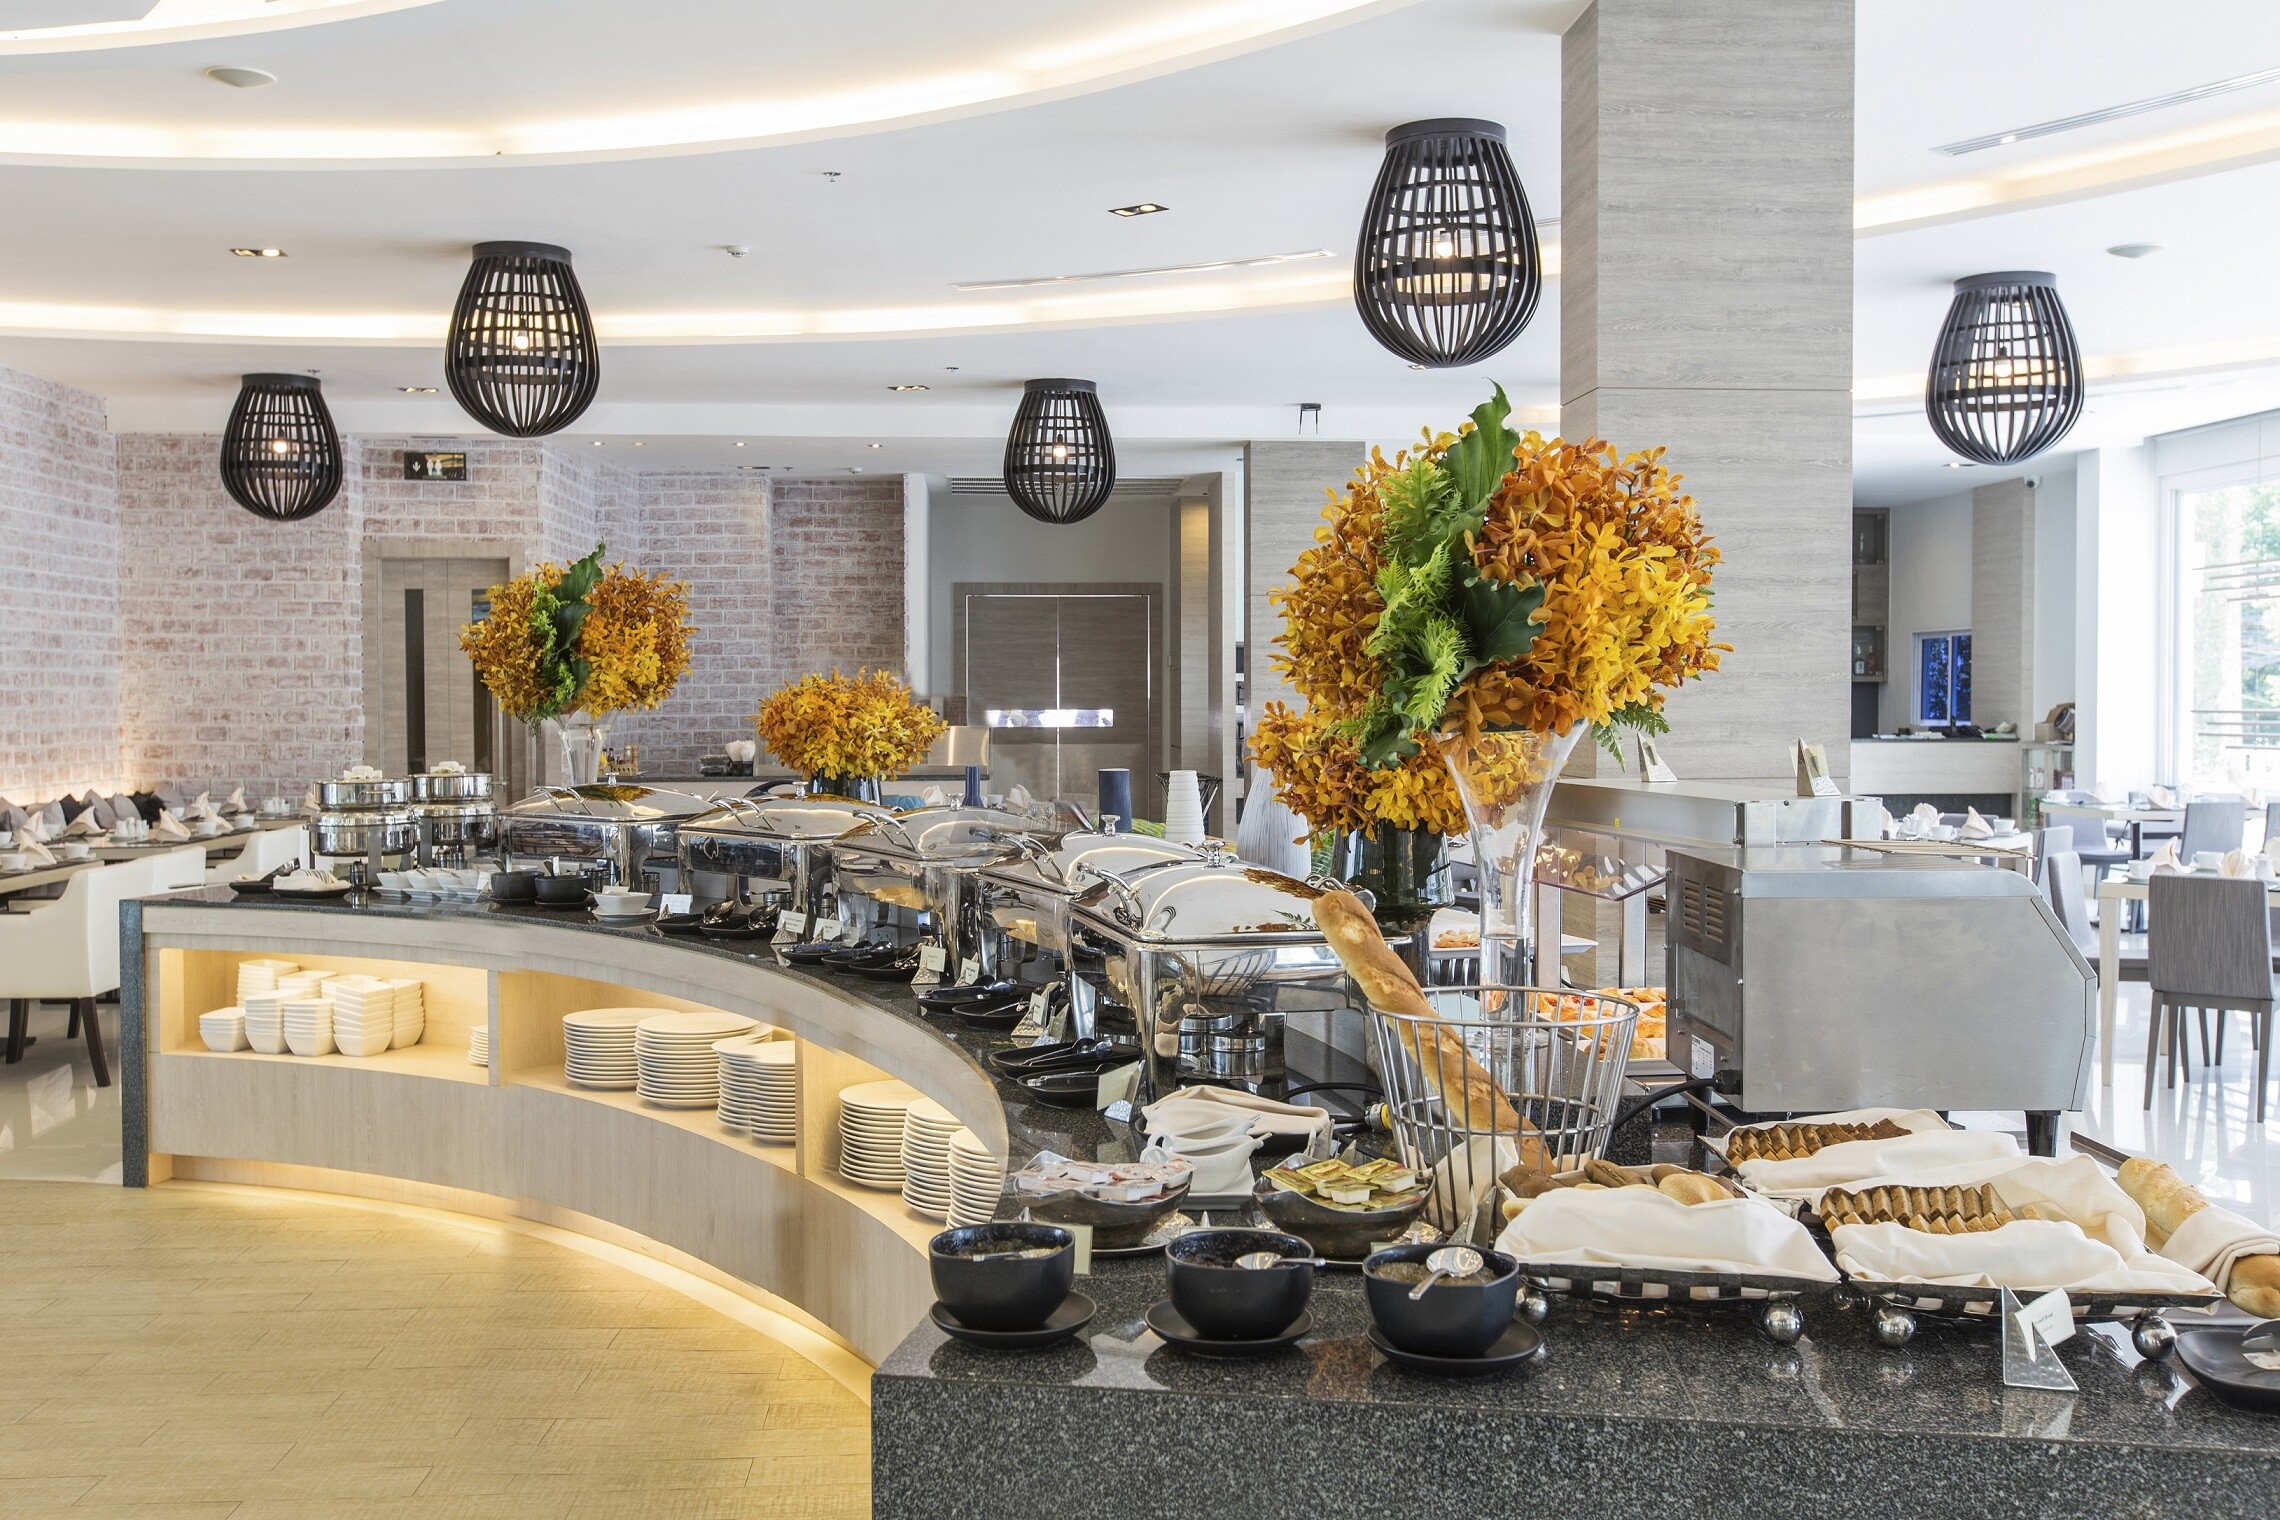 "บุฟเฟ่ต์นานาชาติมื้อค่ำ" อิ่มฟินทุกวันอังคาร ณ ห้องอาหาร ดิ ออร์ชาร์ด โรงแรมแคนทารี 304 ปราจีนบุรี